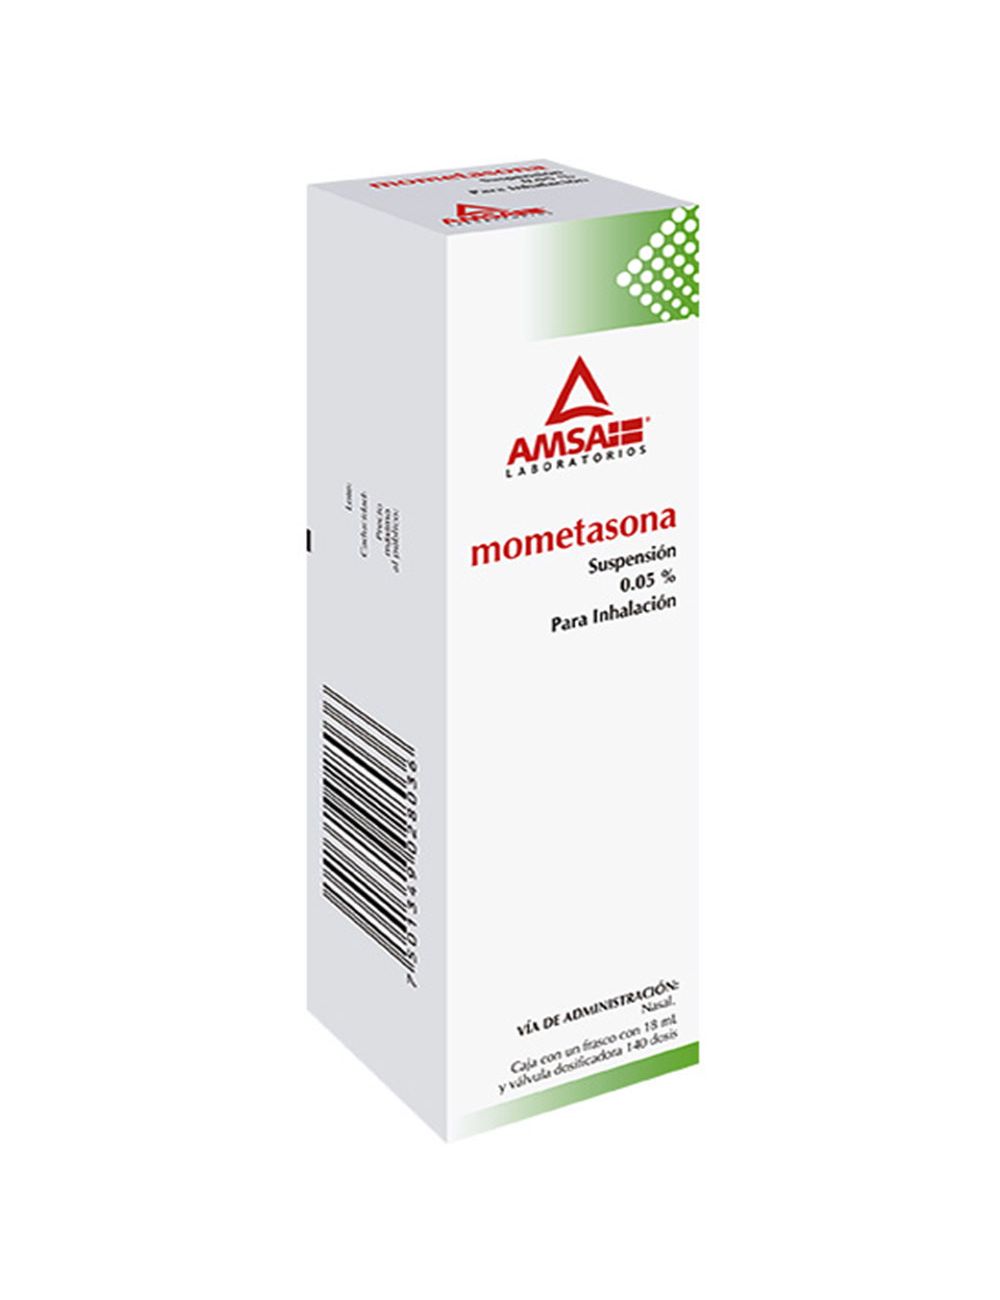 Precio Mometasona 0.05% suspensión inhalación | Farmalisto MX